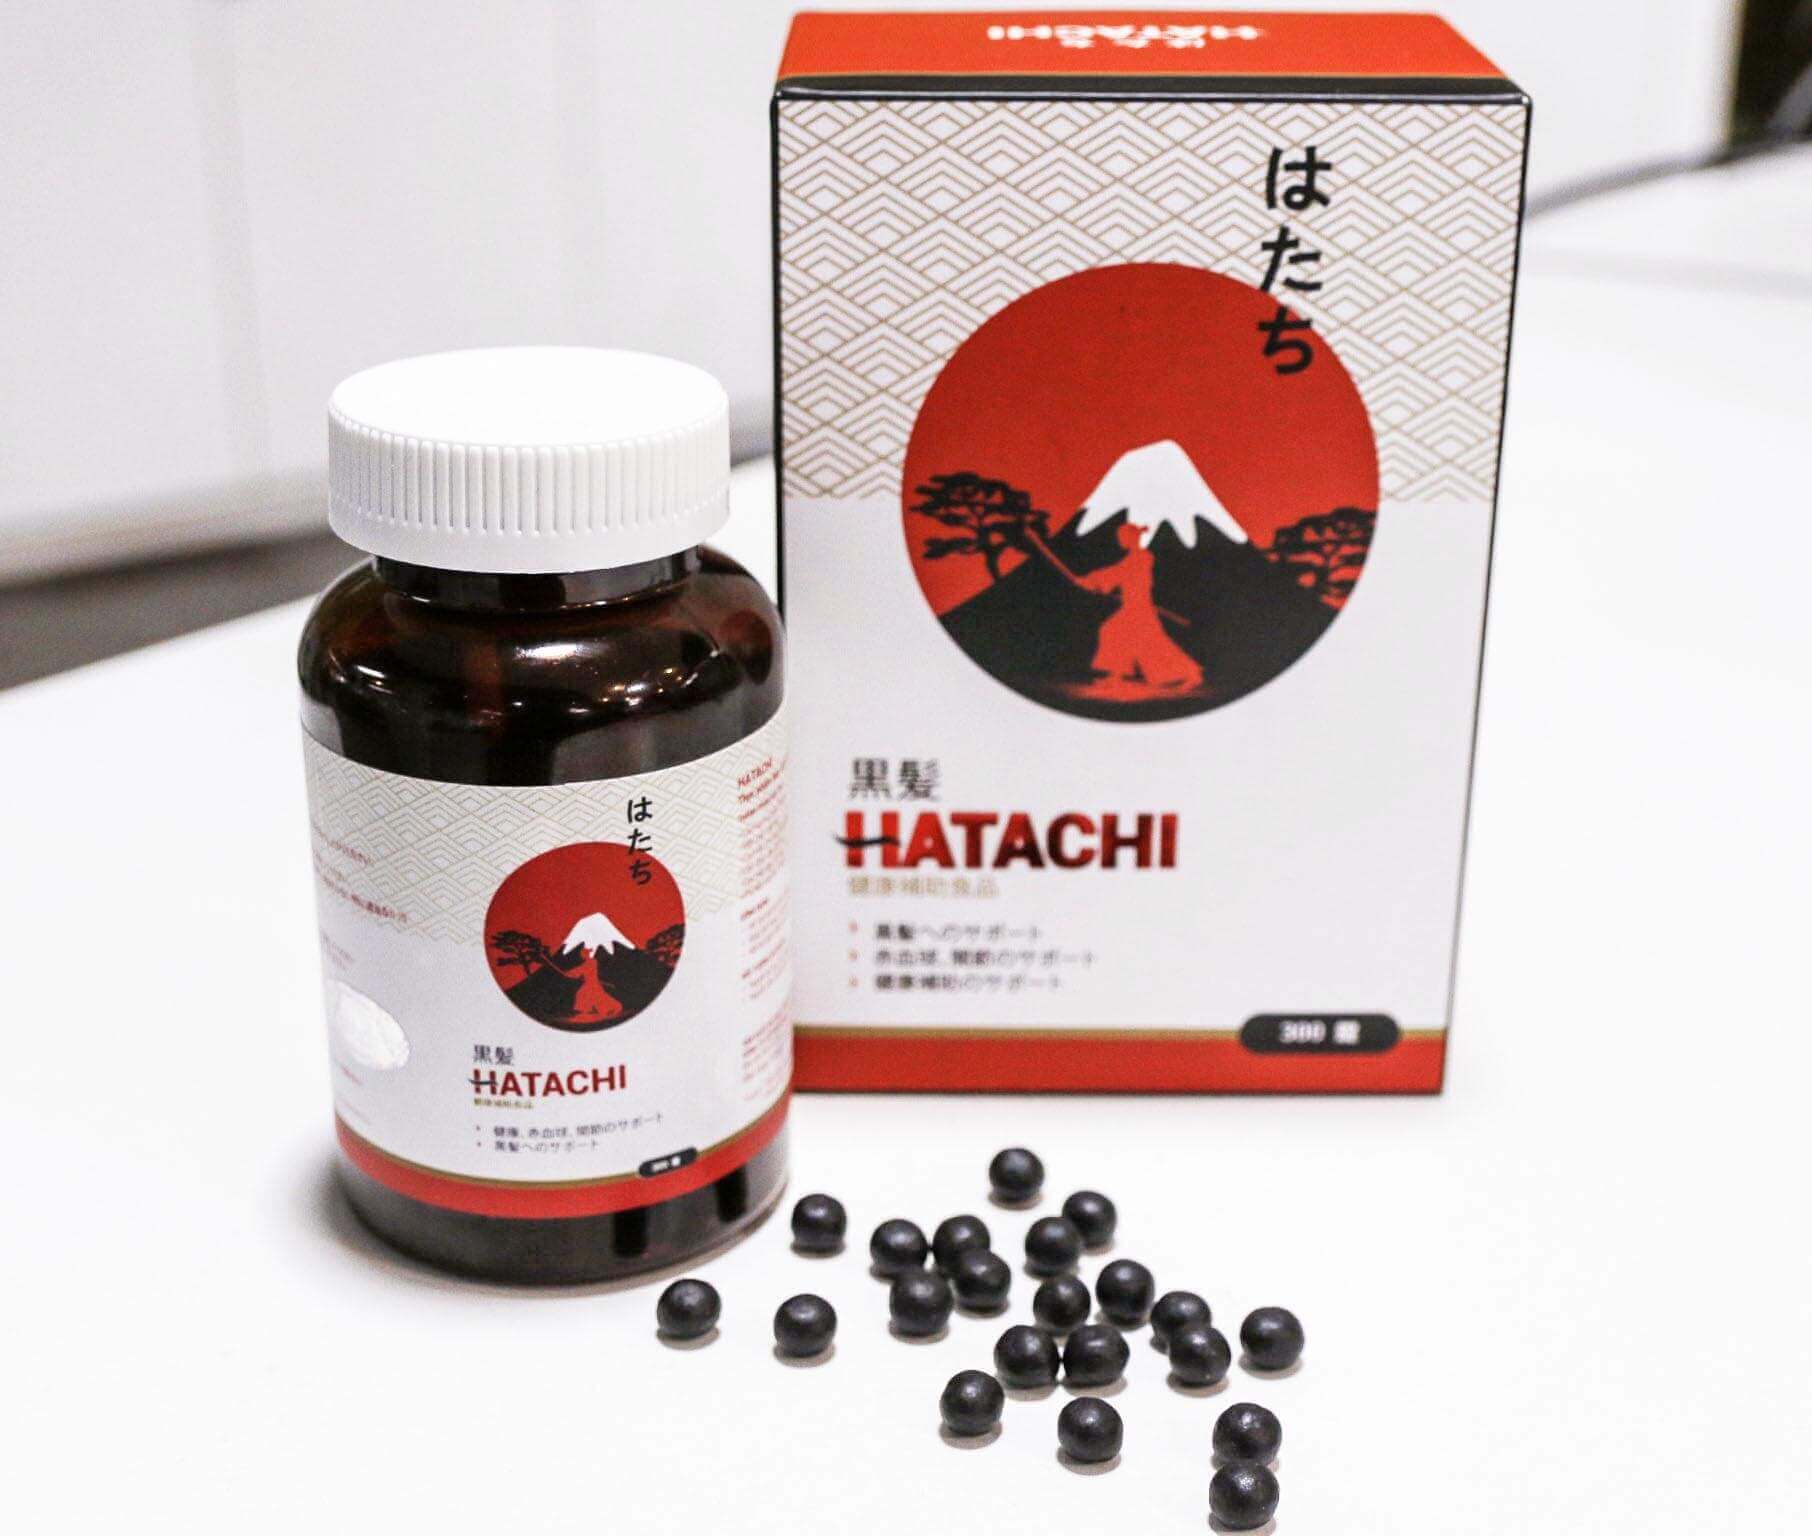 hatachi-giá-bao-nhiêu